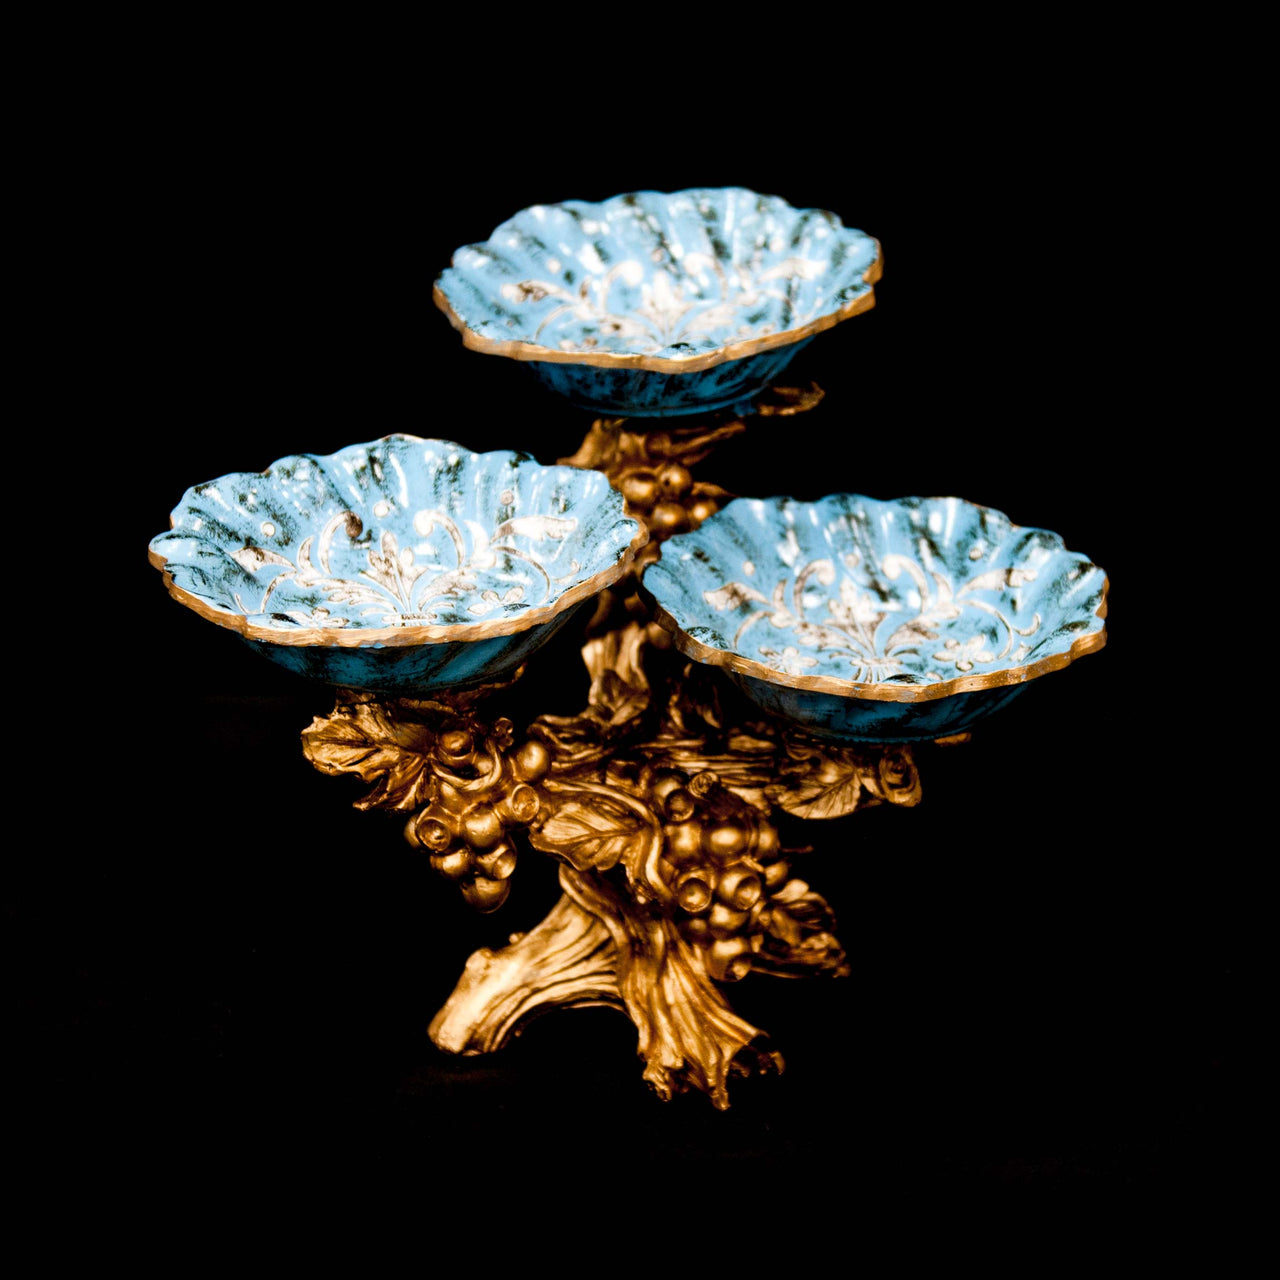 HCHD5365 - Blue Floral 3 Tier Pedestal Dish